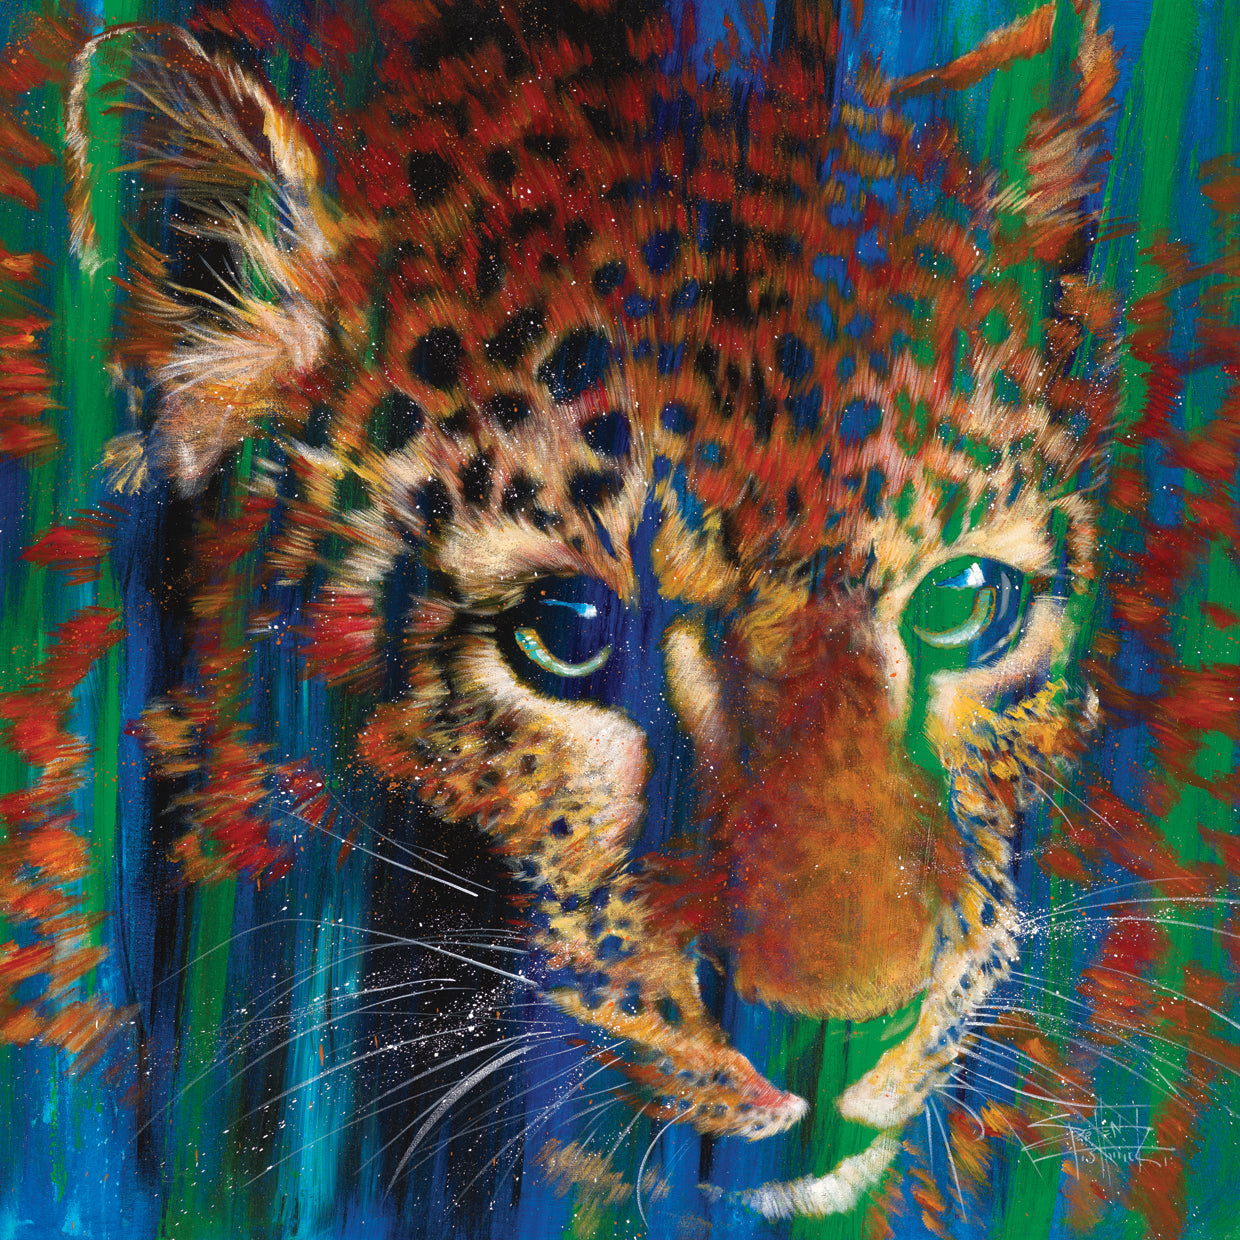 Stephen Fishwick's Leopard-Lookout